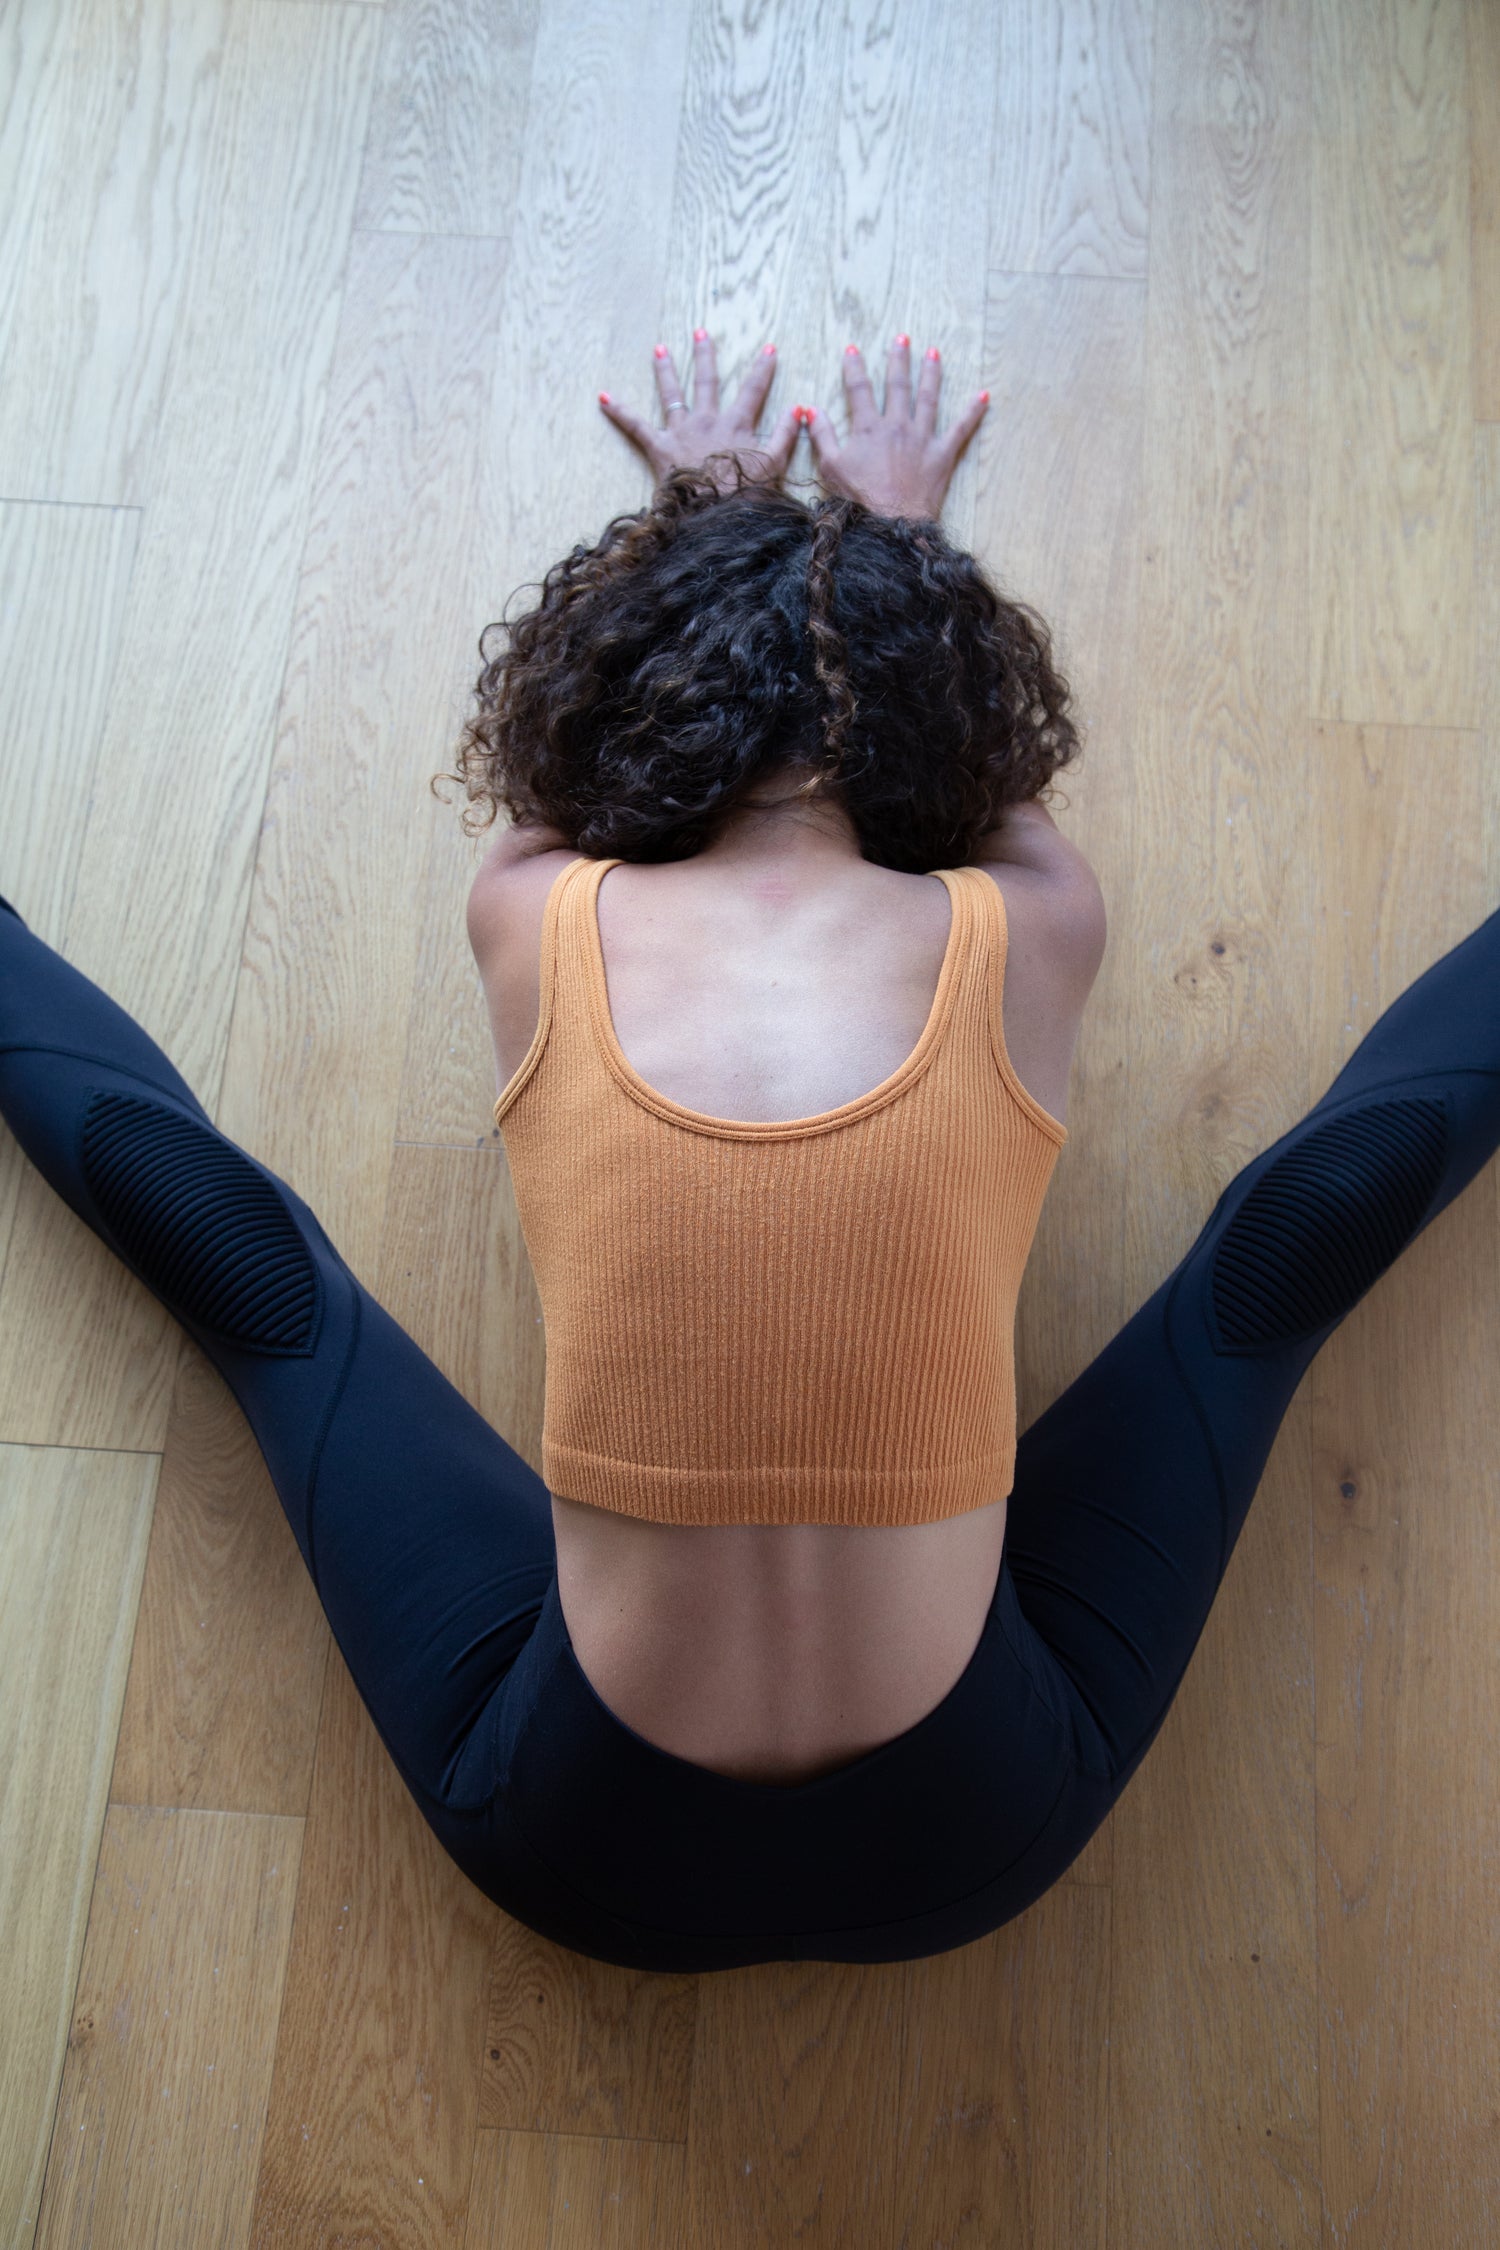 Maat leggings review: Leggings designed for practicing yoga